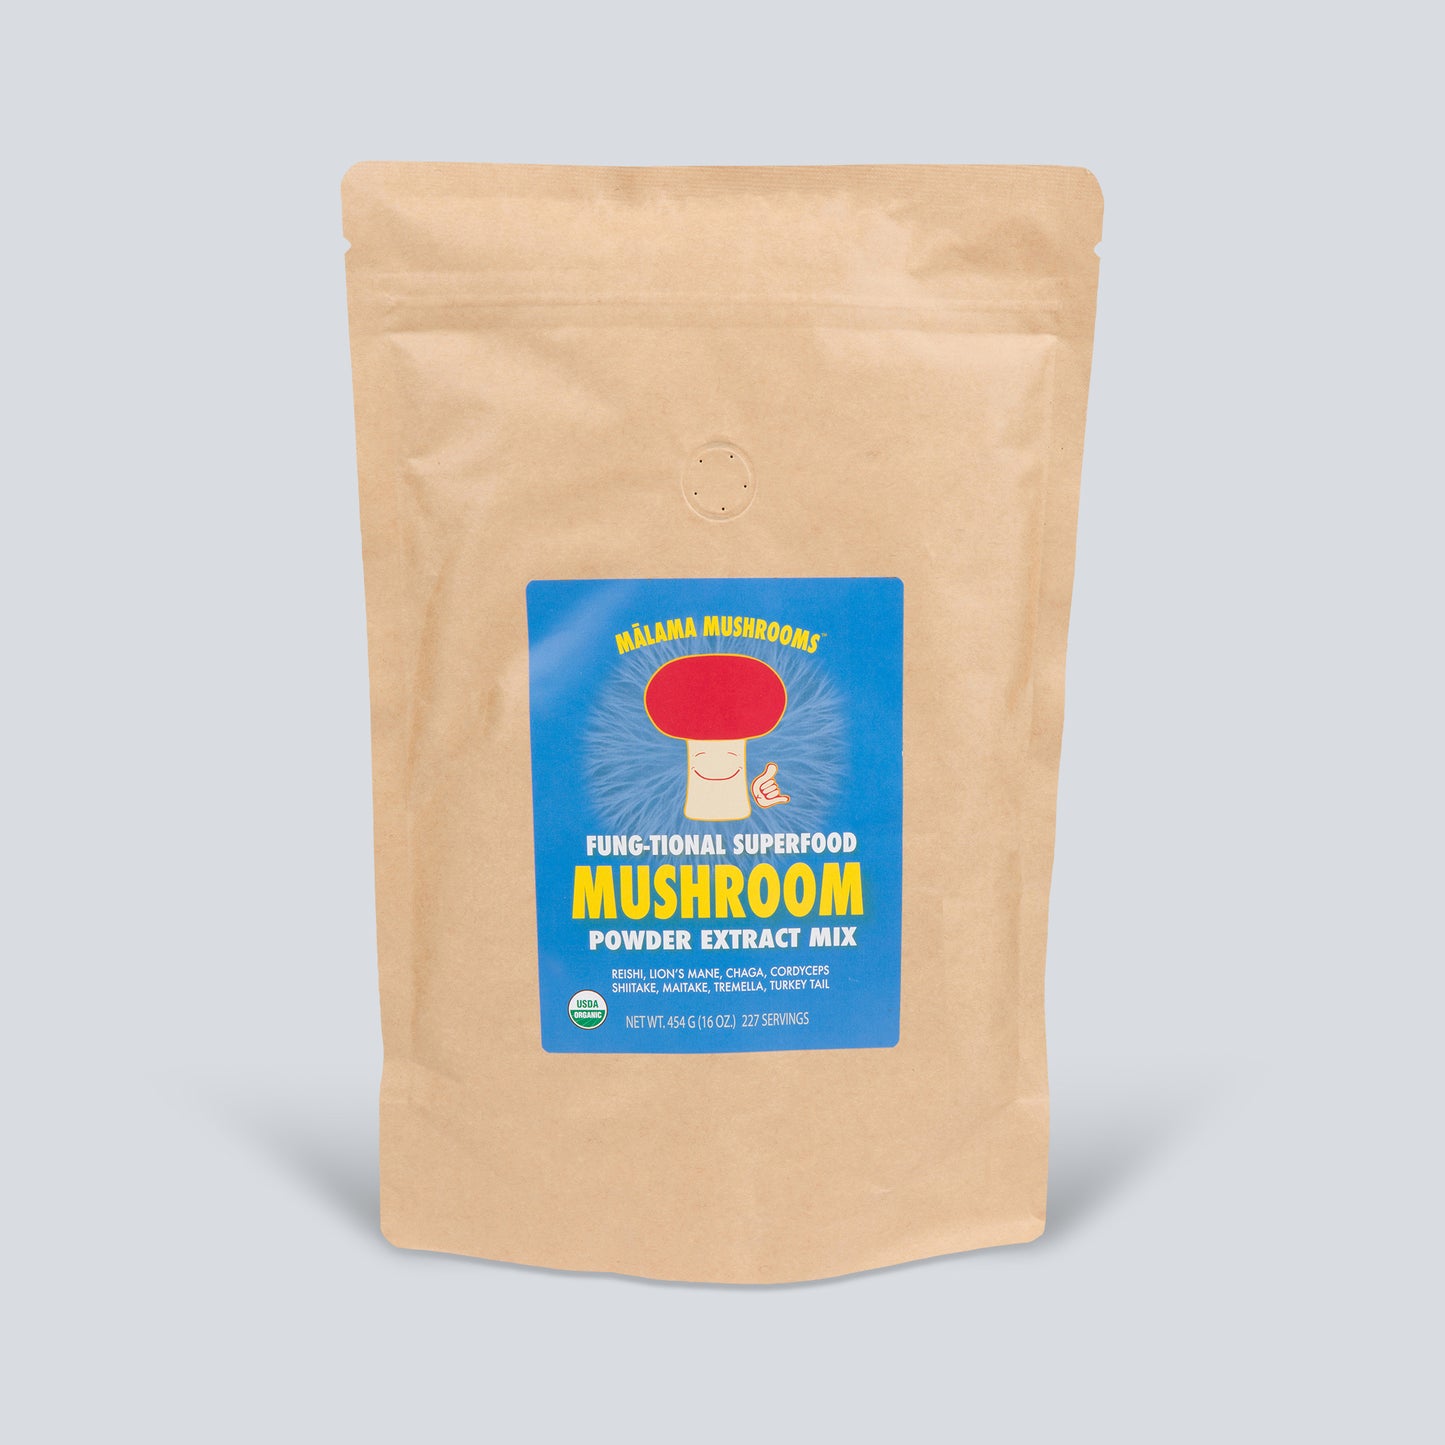 8 Mushroom Superfood Powder Mix | USDA Organic – Mālama Mushrooms Hawaii